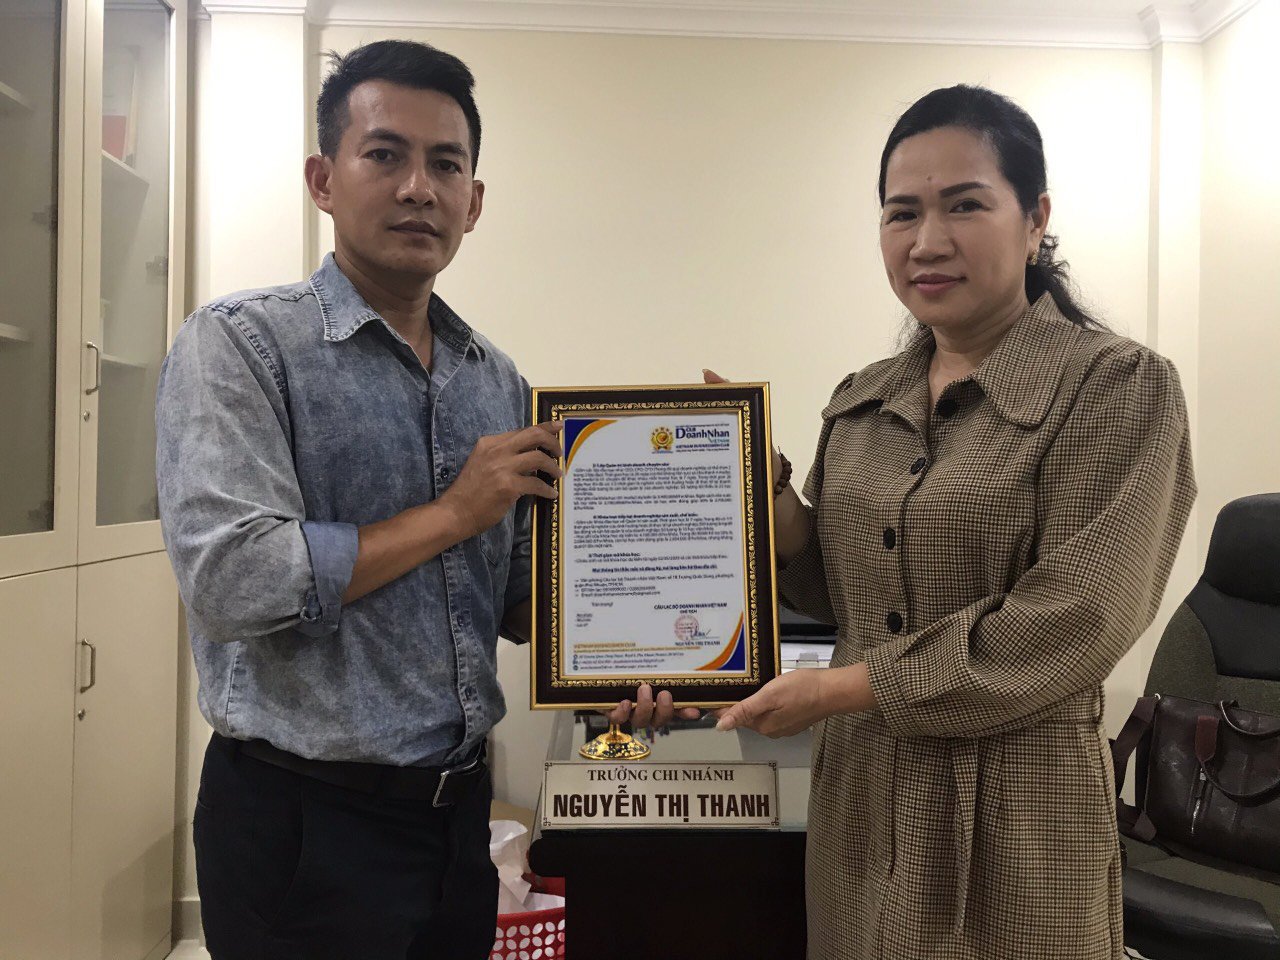 Ông Trần Quang Xô – Giám đốc công ty Southern Gold được bổ nhiệm làm Phó Chủ tịch phụ trách Truyền thông sự kiện CLB Doanh nhân Việt Nam.